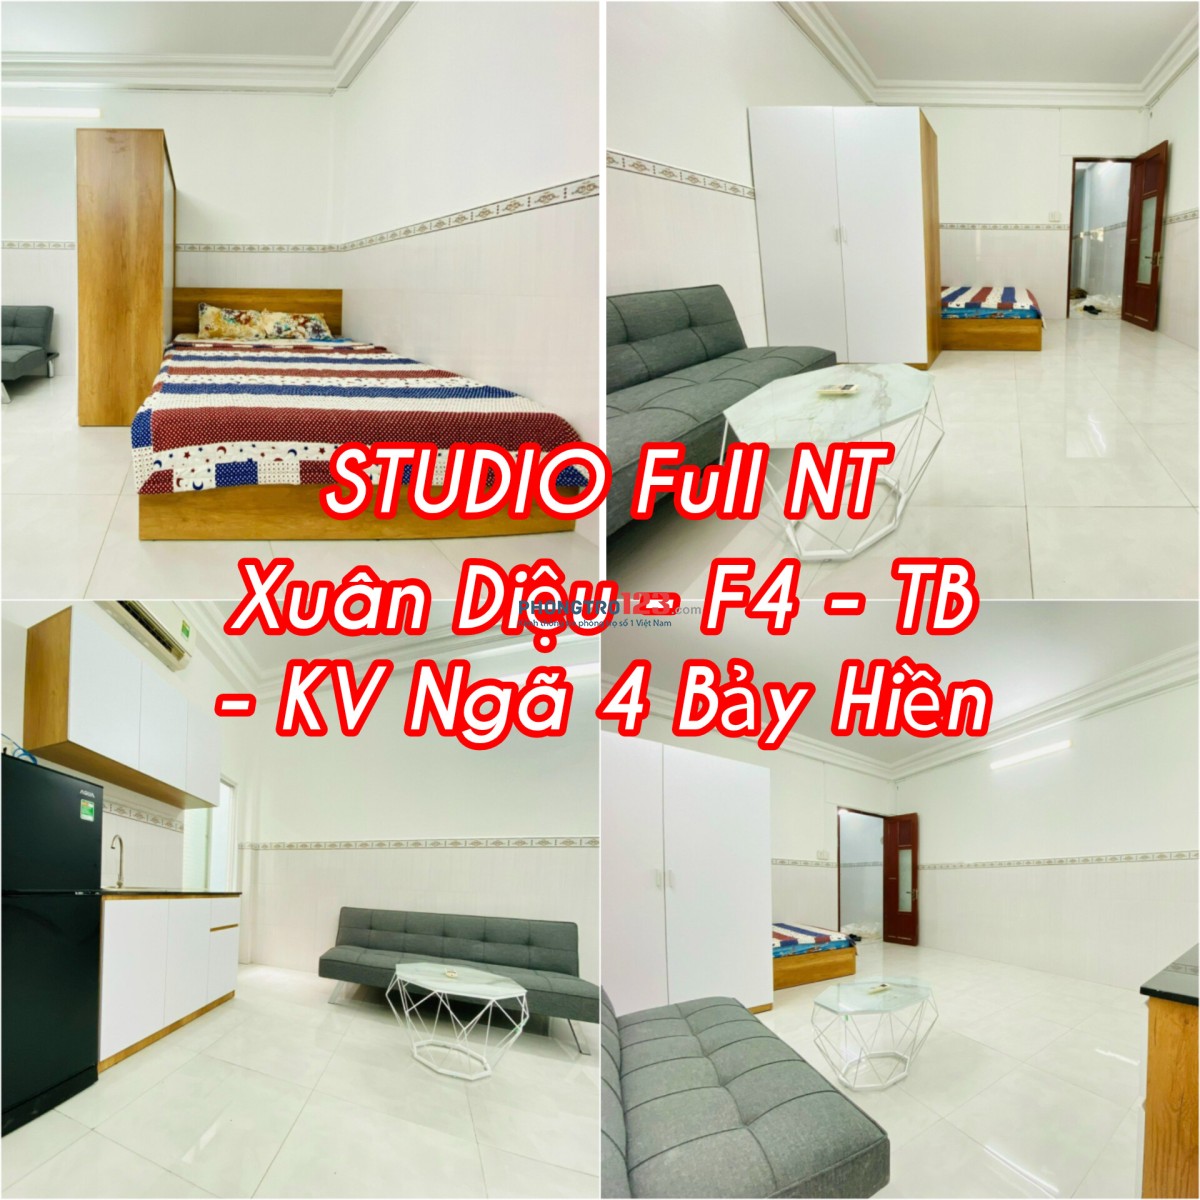 Phòng Studio Full Nộ Thất Xuân Diêụ - KV Ngã 4 Bảy Hiền - Tân Bình.